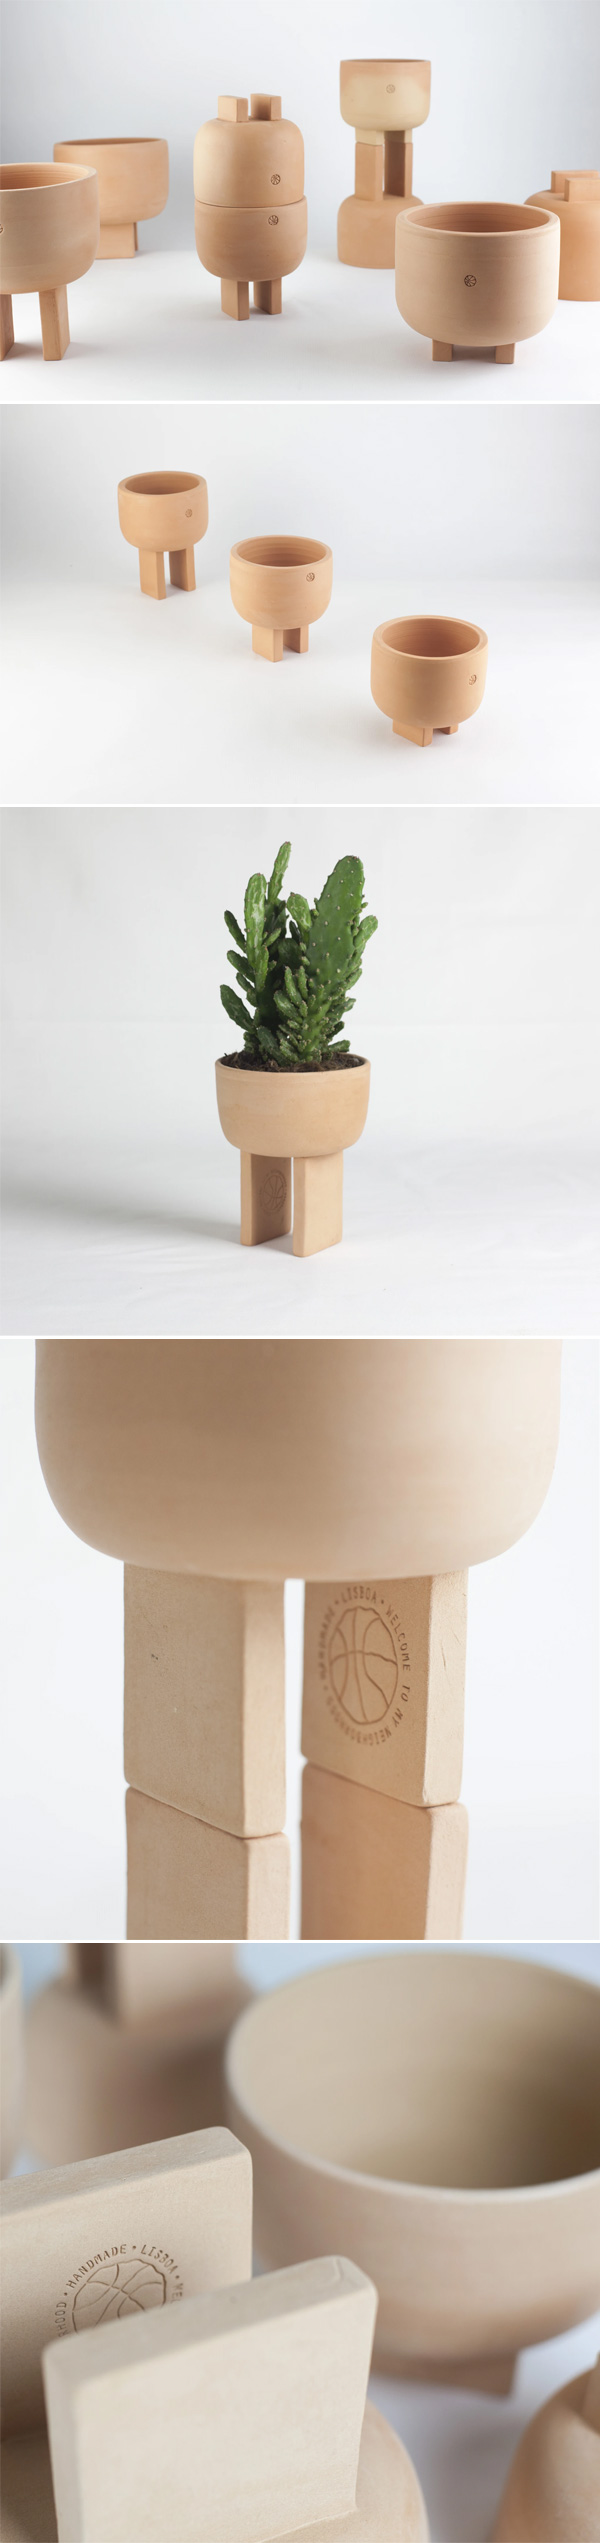 Geta Planters by Quartier Ceramics